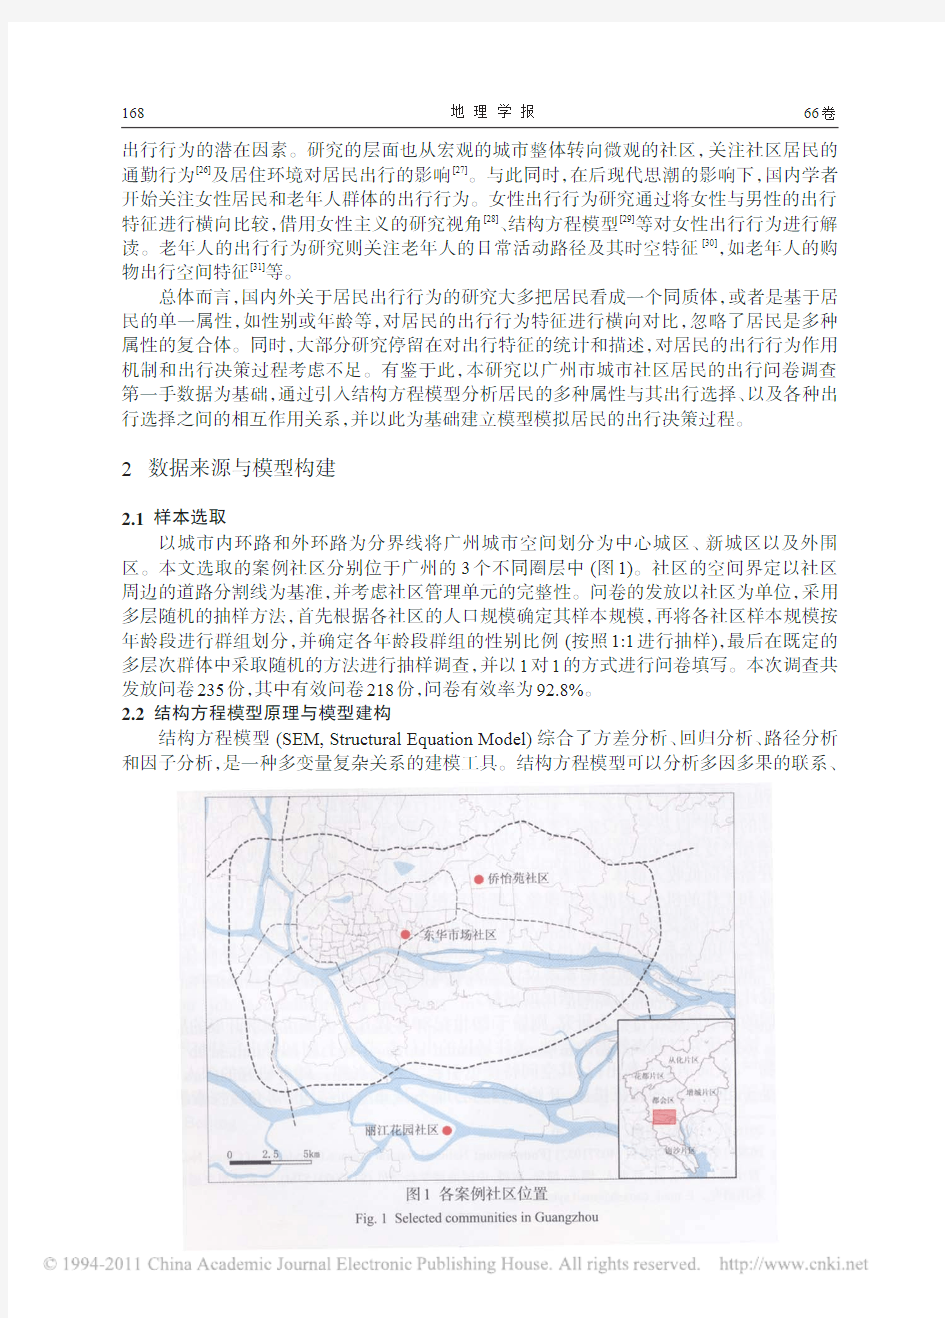 基于结构方程模型的广州城市社区居民出行行为_曹小曙